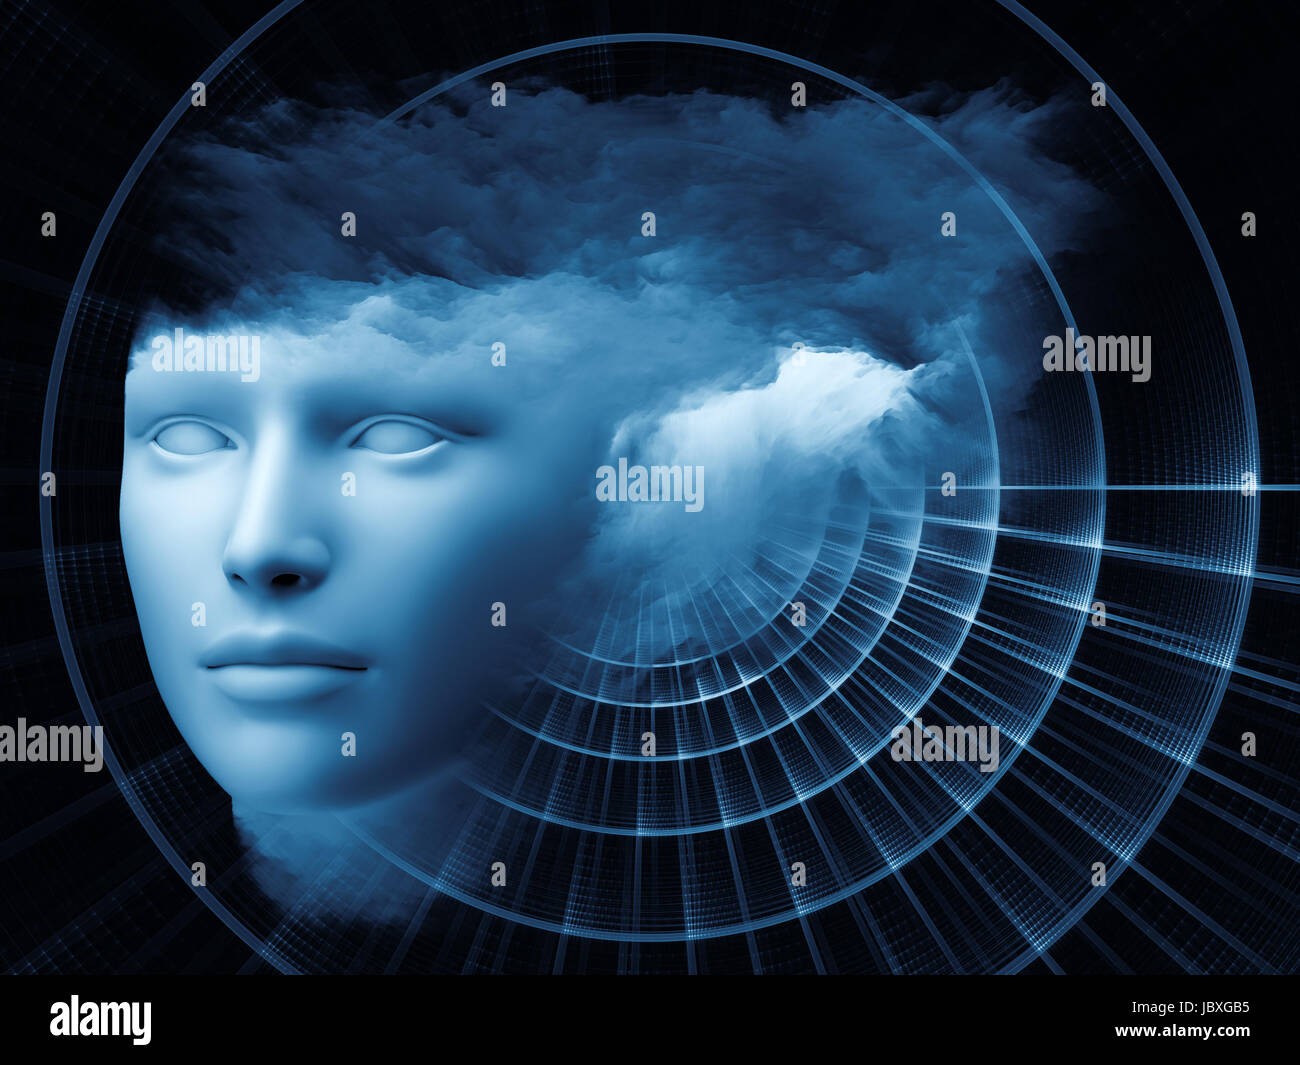 Fraktal-Mind-Serie. Kreative Anordnung des menschlichen Kopfes und Fraktale Wolken als kostenlose Grafik für Apropos träumen, denken, Bewusstsein, Geist und Phantasie zu handeln Stockfoto